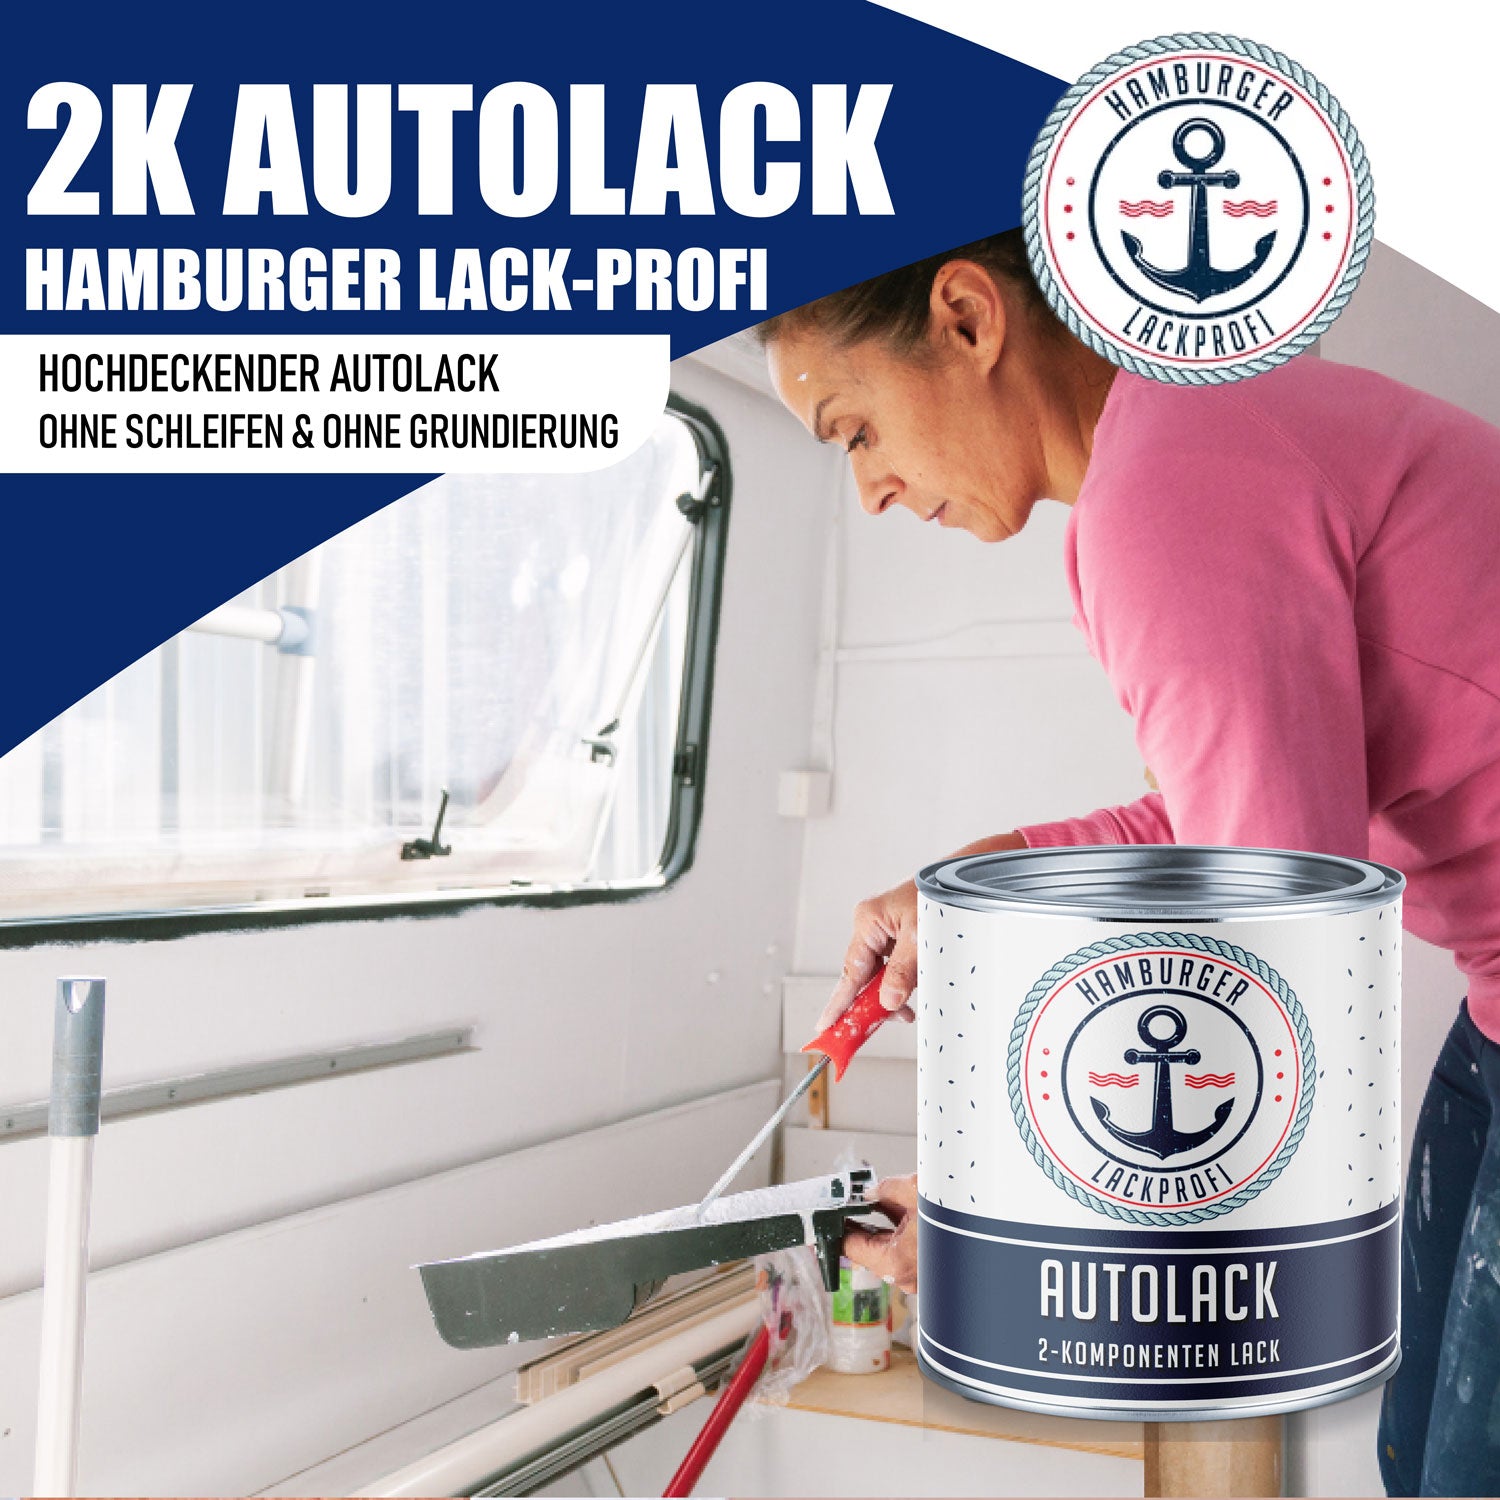 Hamburger Lack-Profi 2K Autolack in Elfenbein RAL 1014 mit Lackierset (X300) & Verdünnung (1 L) - 30% Sparangebot